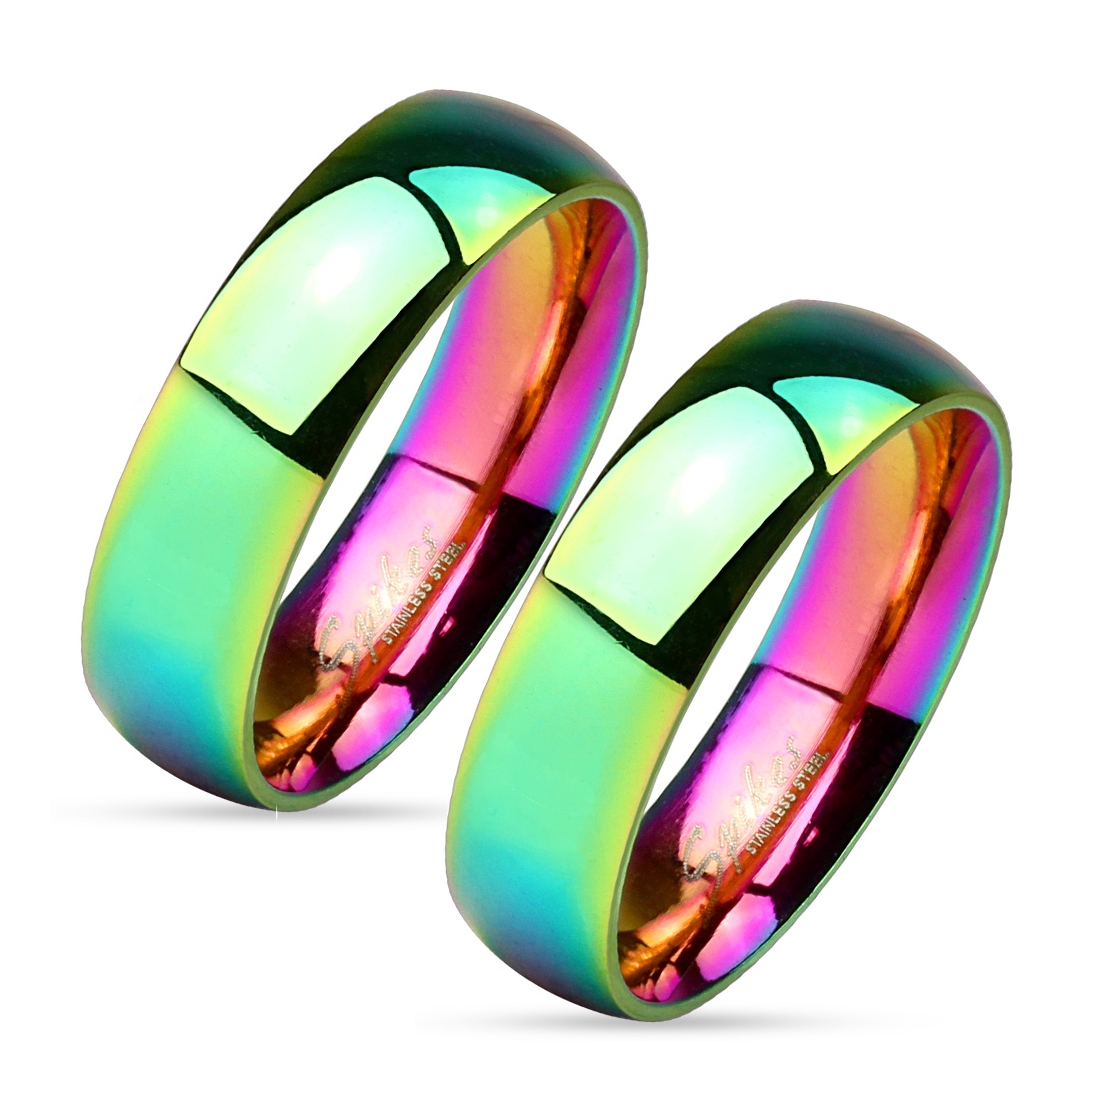 Snubní ocelové prsteny